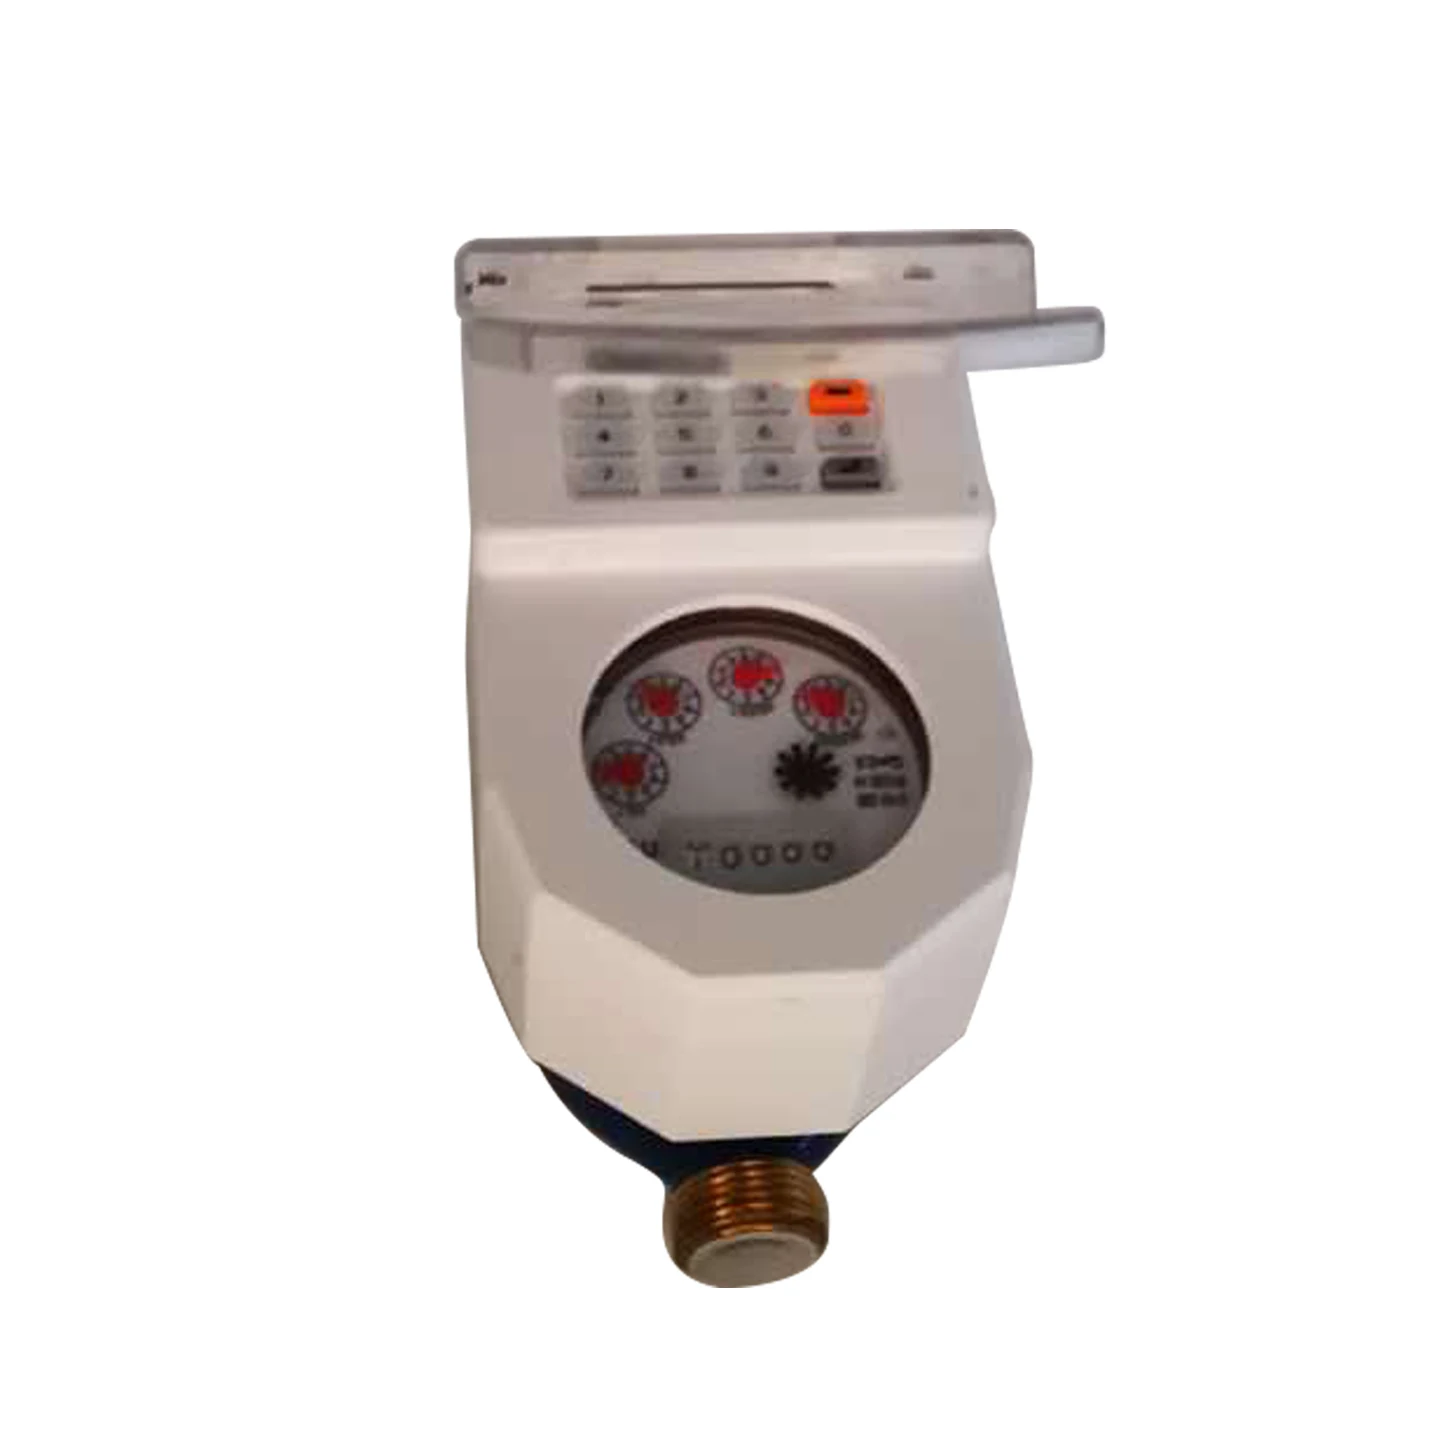 
STS prepaid cold water meter 